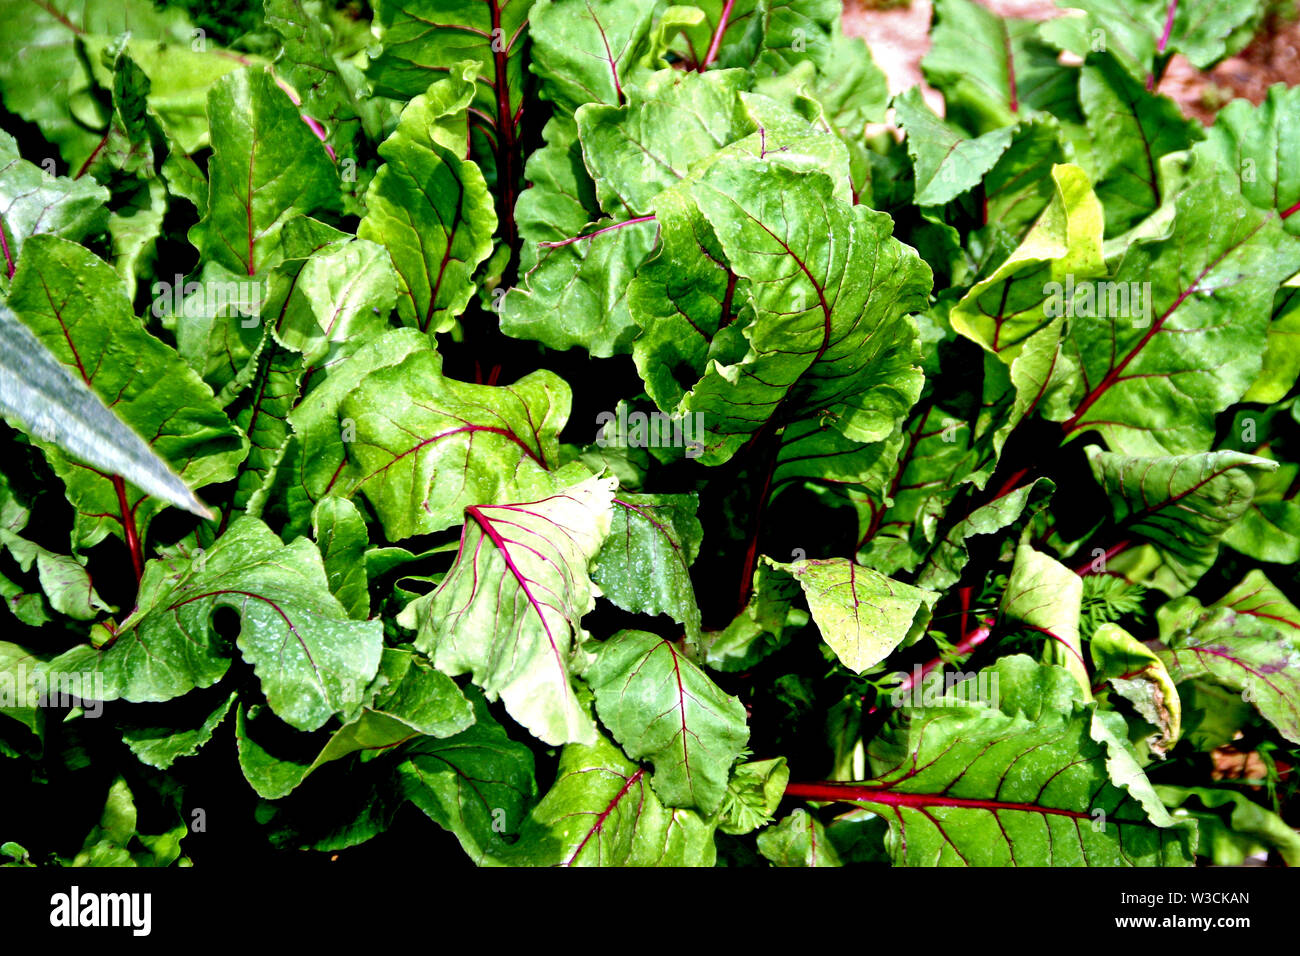 Colorata in verde con venature rosse barbabietole tops a foglia verde Foto Stock